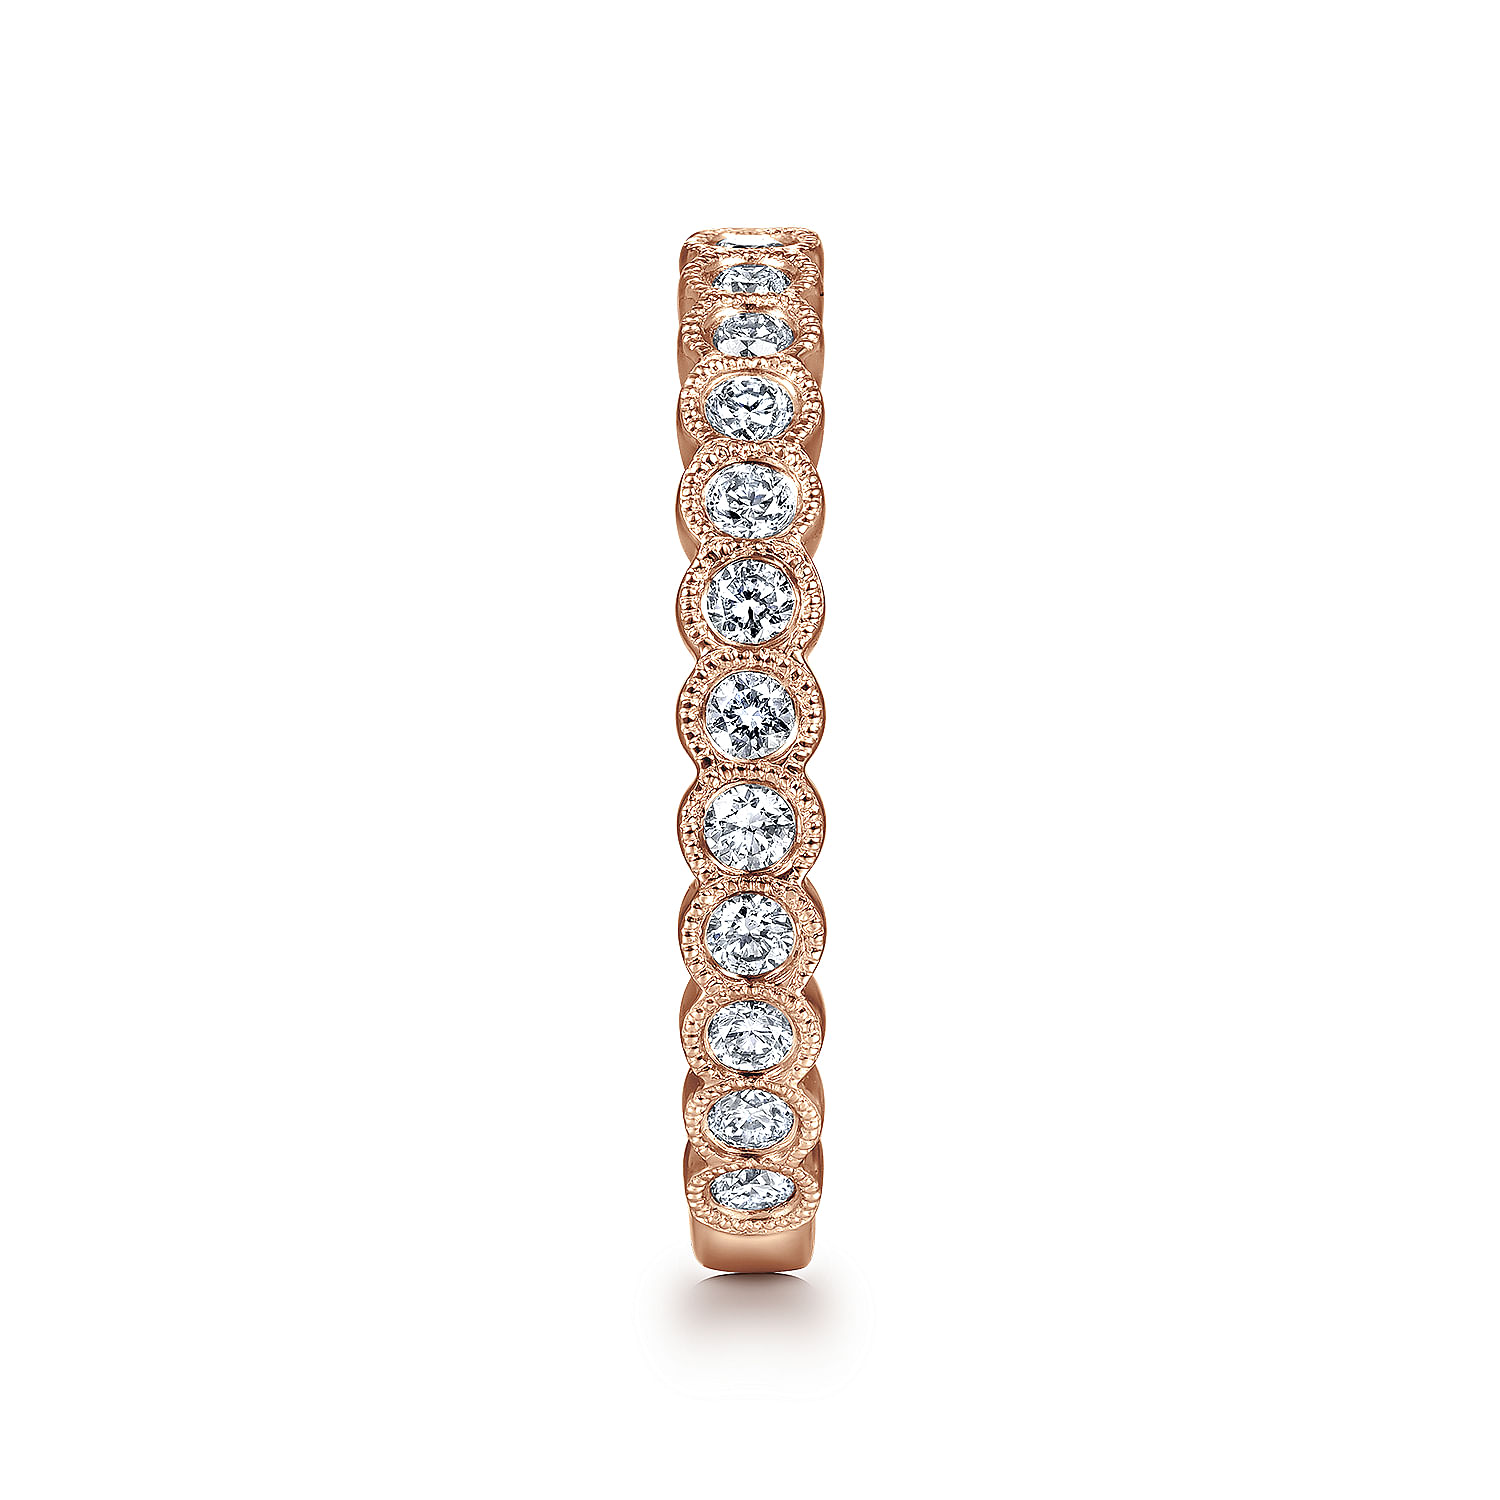 14K Rose Gold Diamond Ring with Milgrain Bezel - 0.45 ct - Shot 4